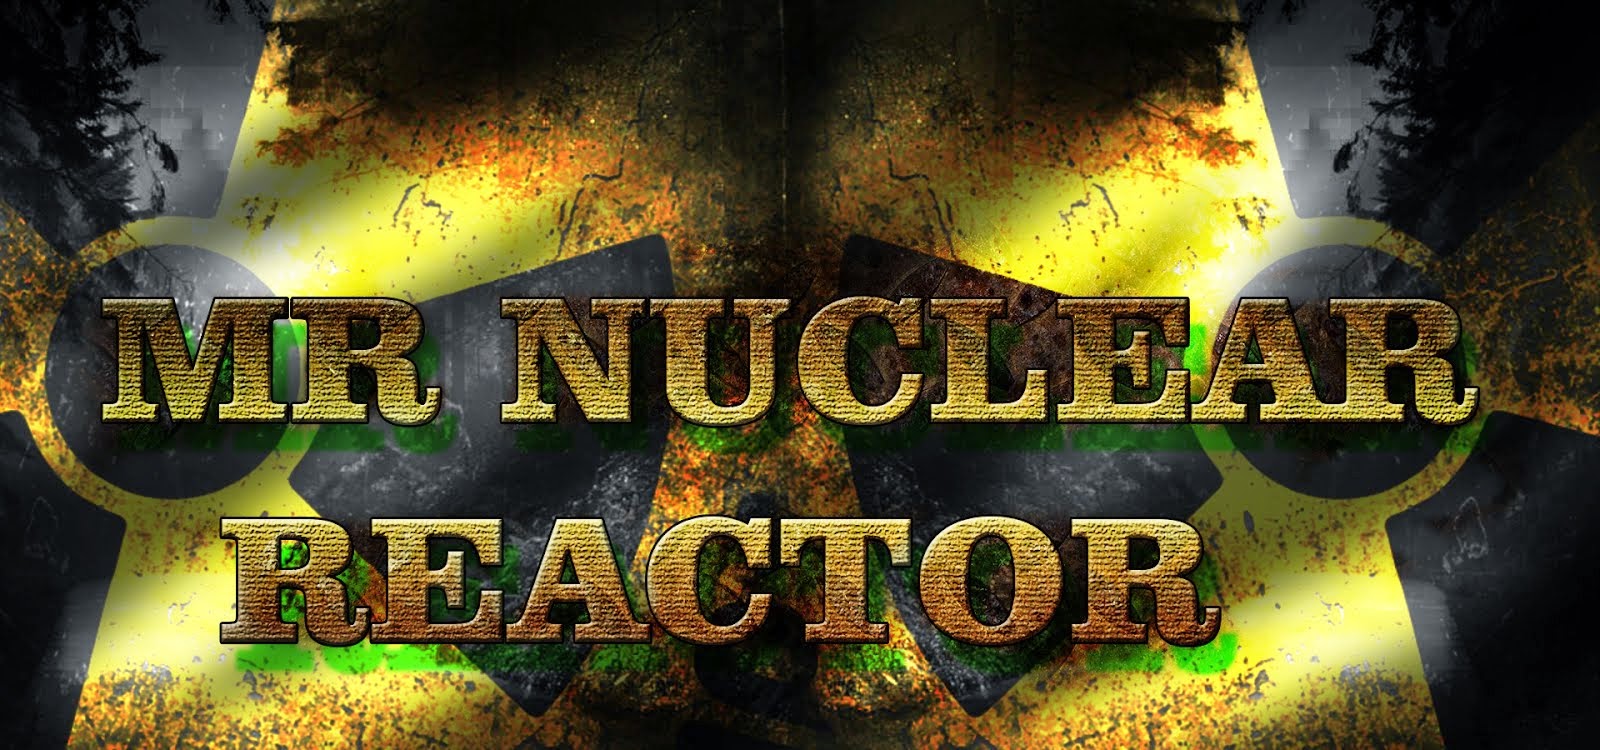 Mr Nuclar Reactor